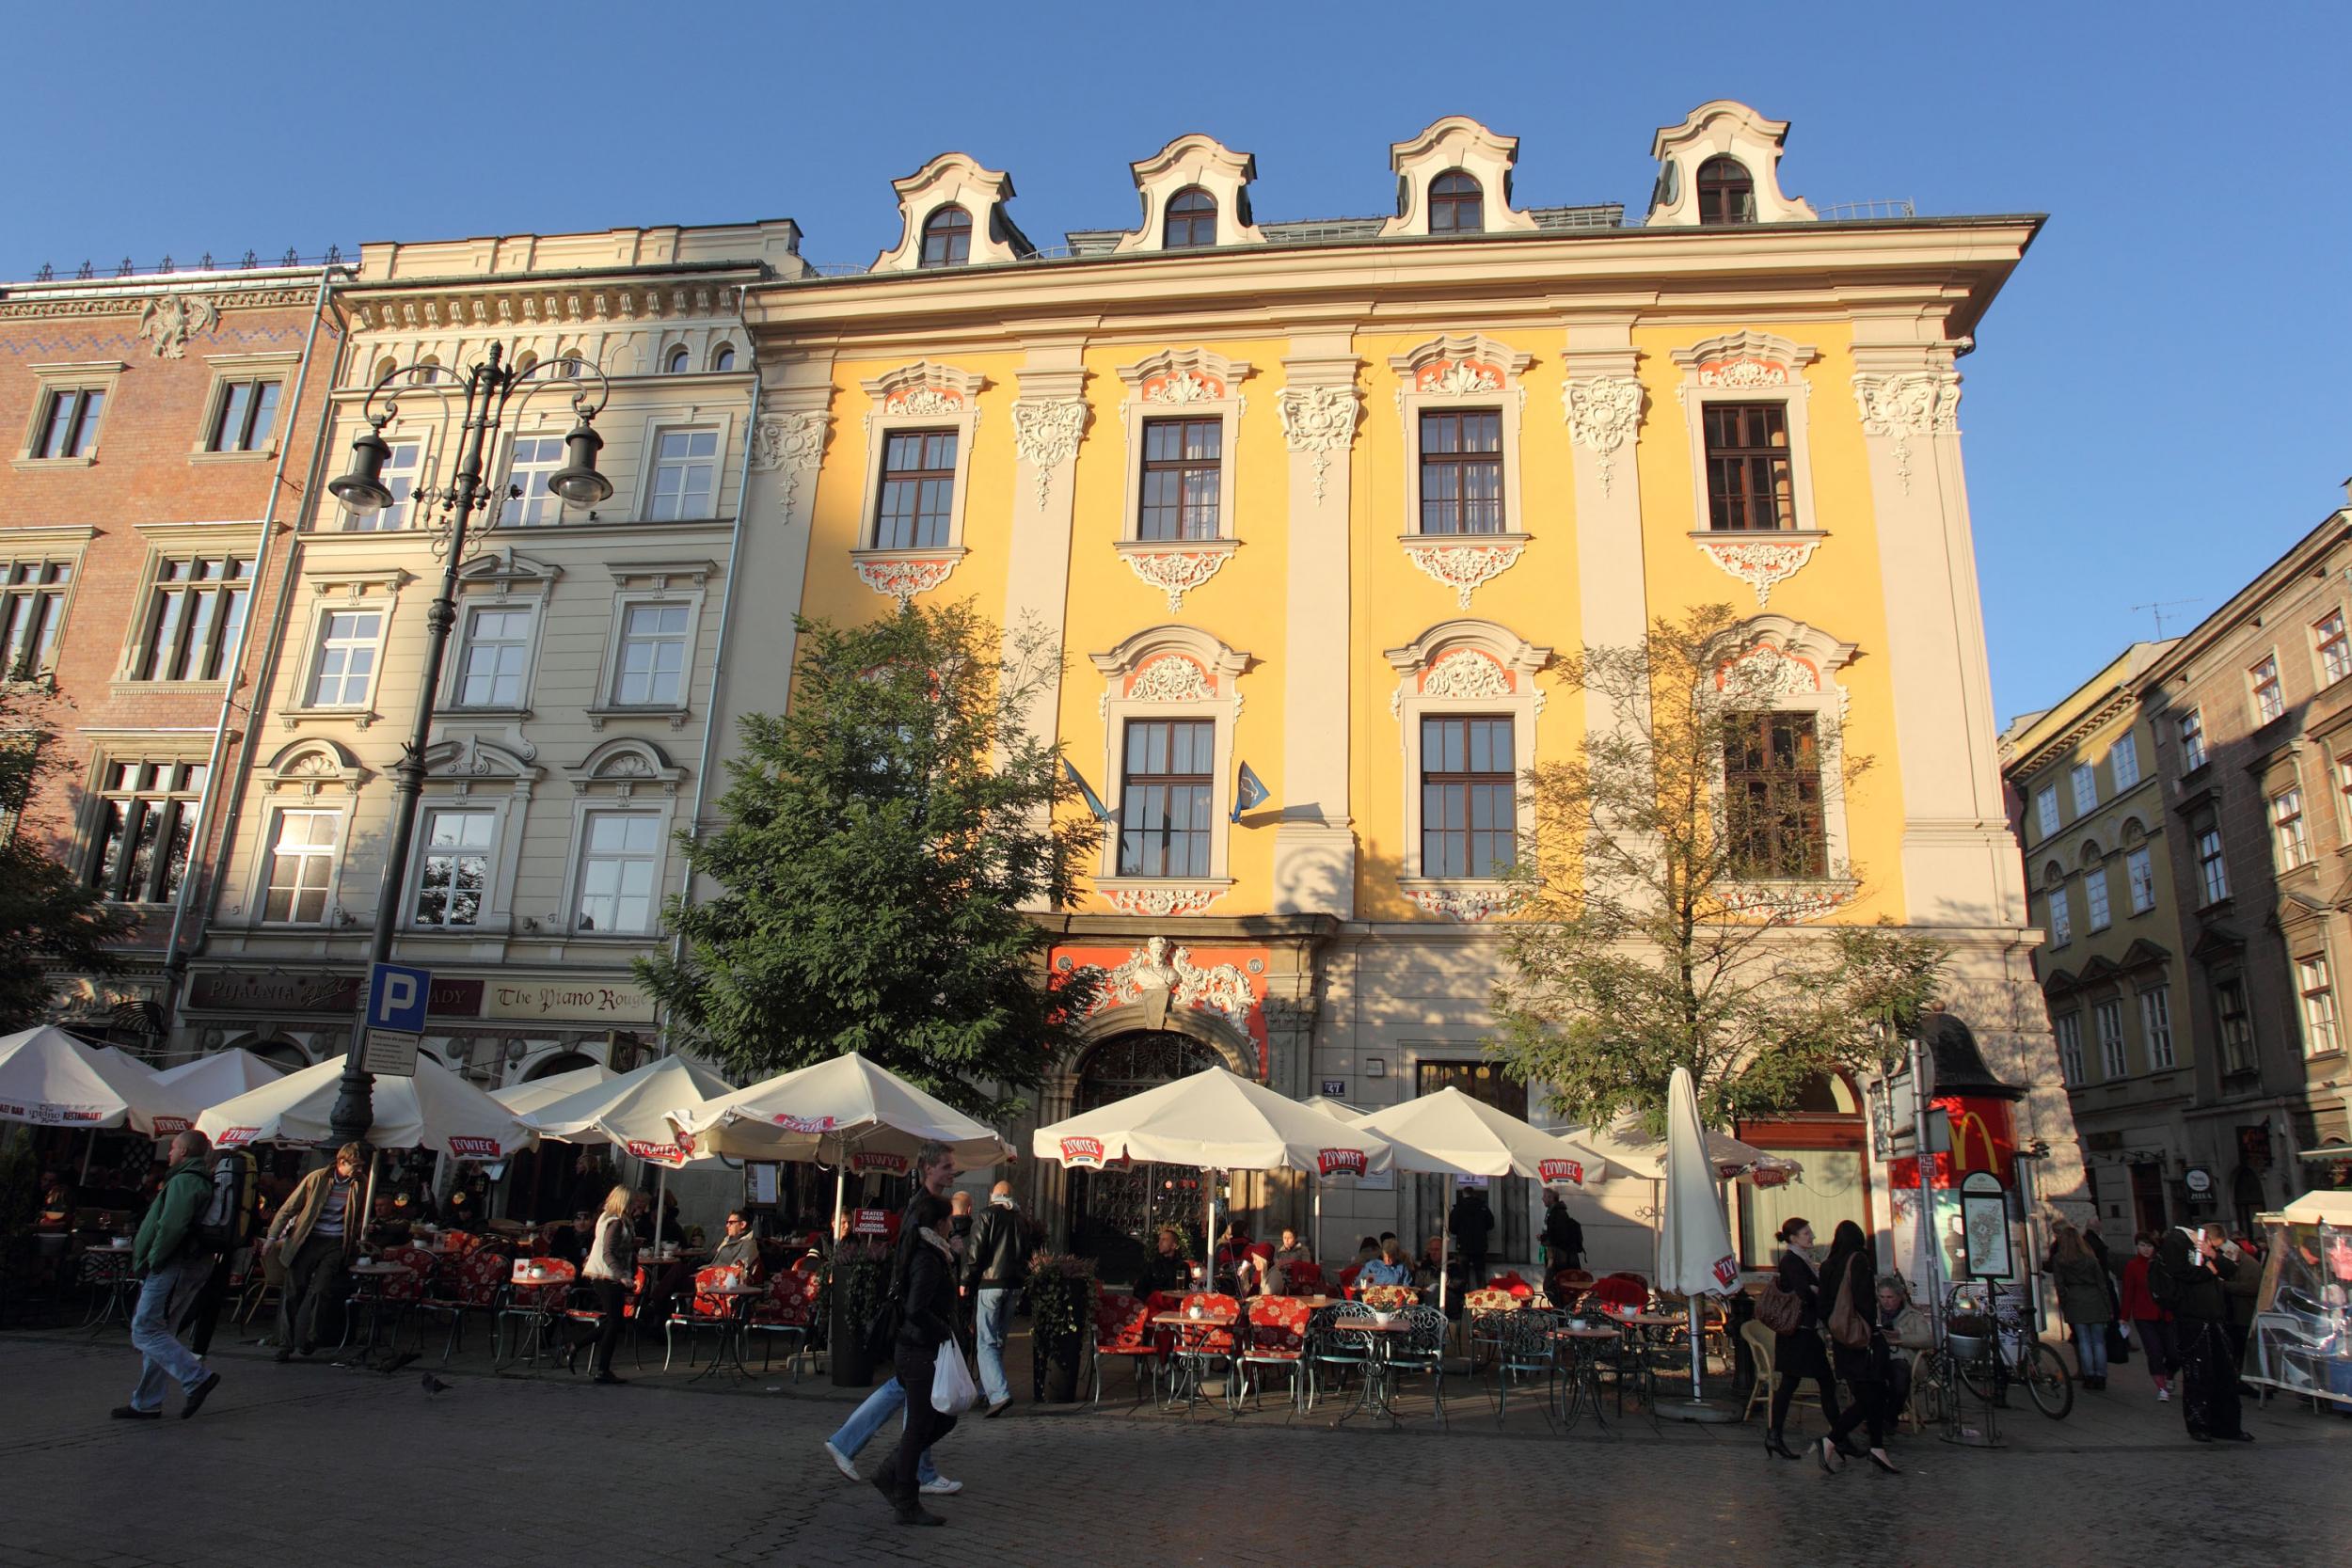 Take a free tour of Krakow's Old Town